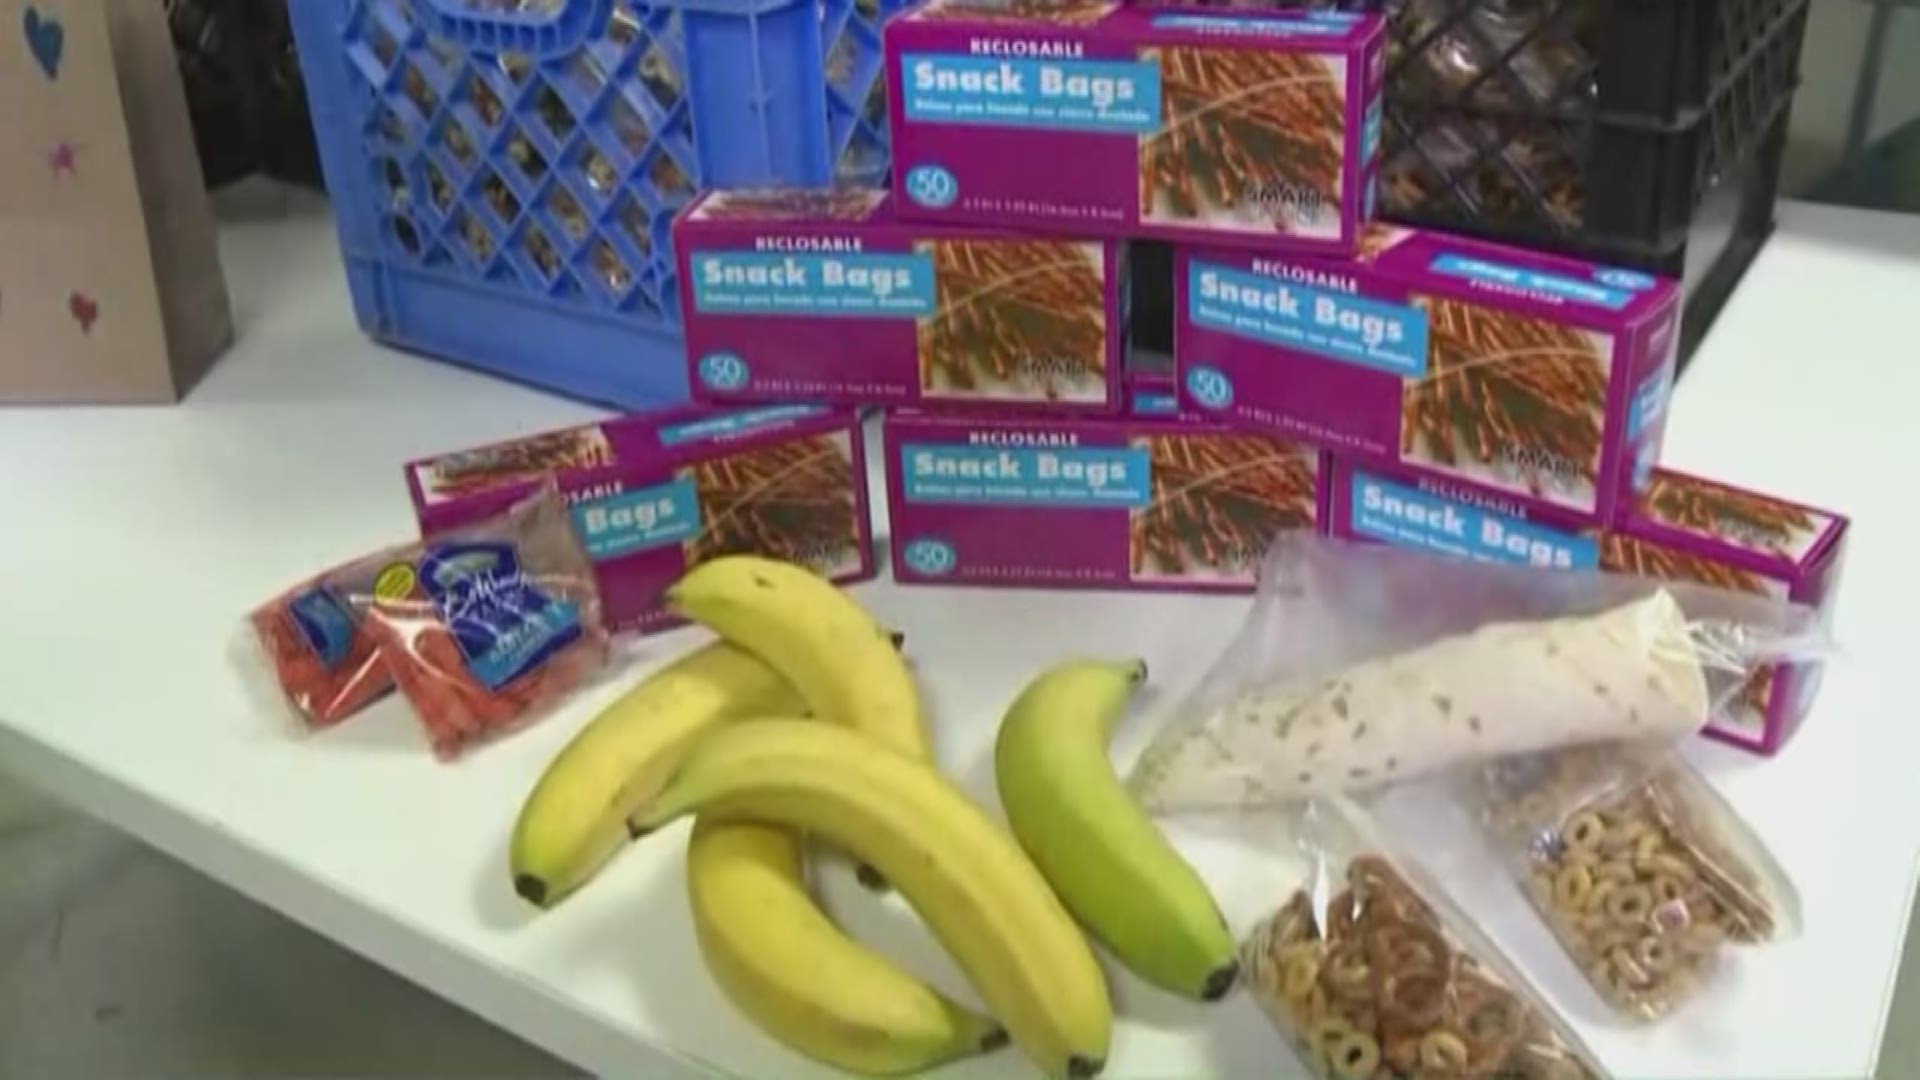 Kids Food Basket works to help fill food gap